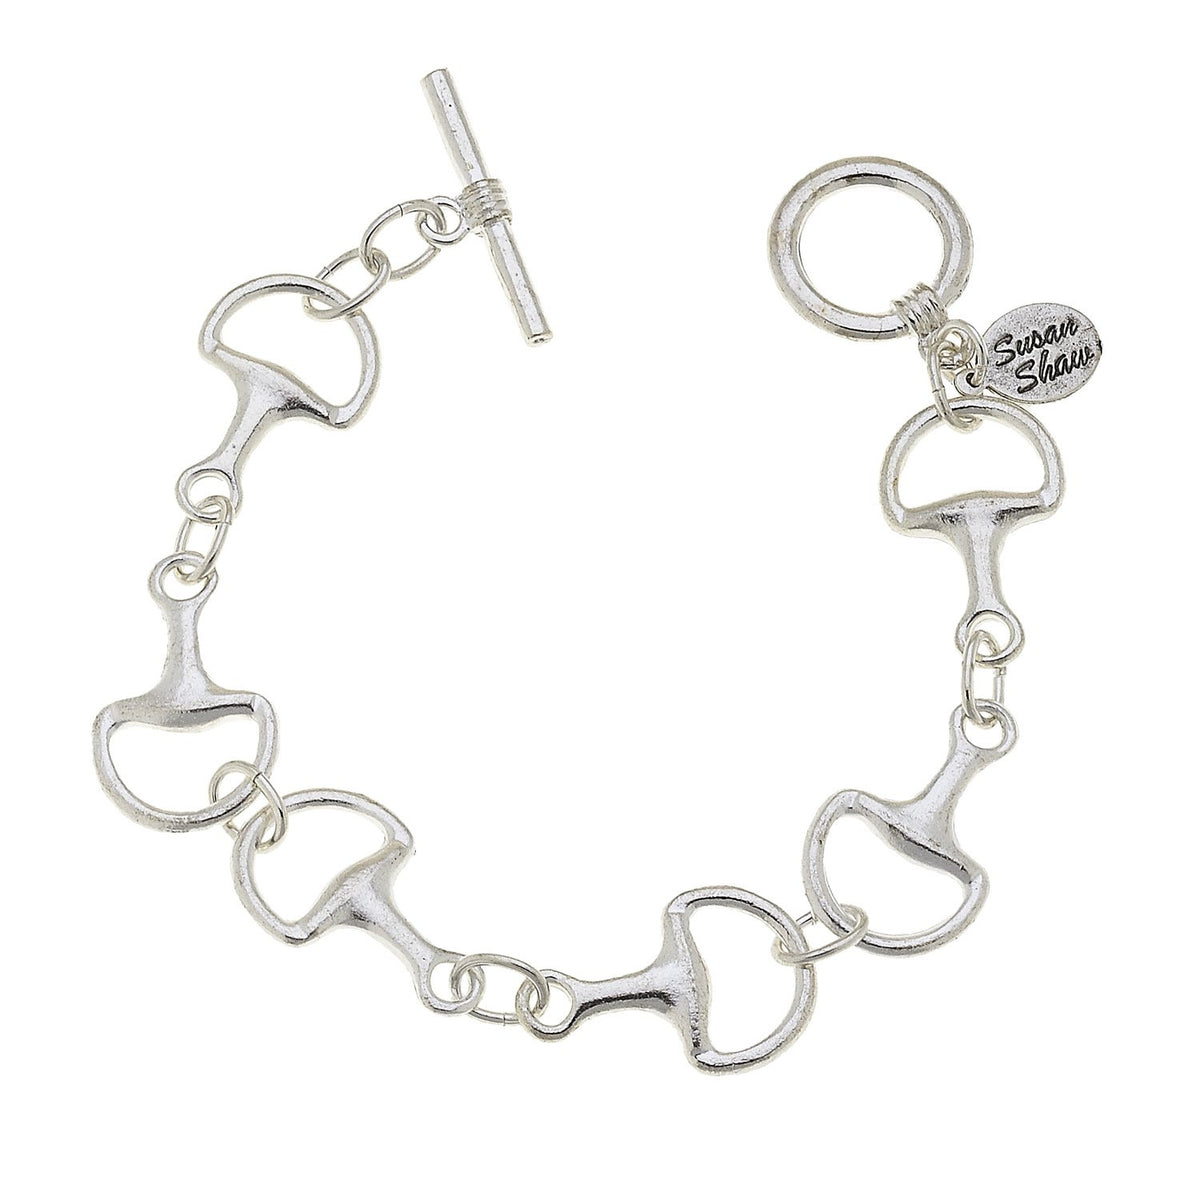 Ross-Simons Italian Sterling Silver Horsebit Bracelet With Black Onyx for  Female, Adult - Walmart.com